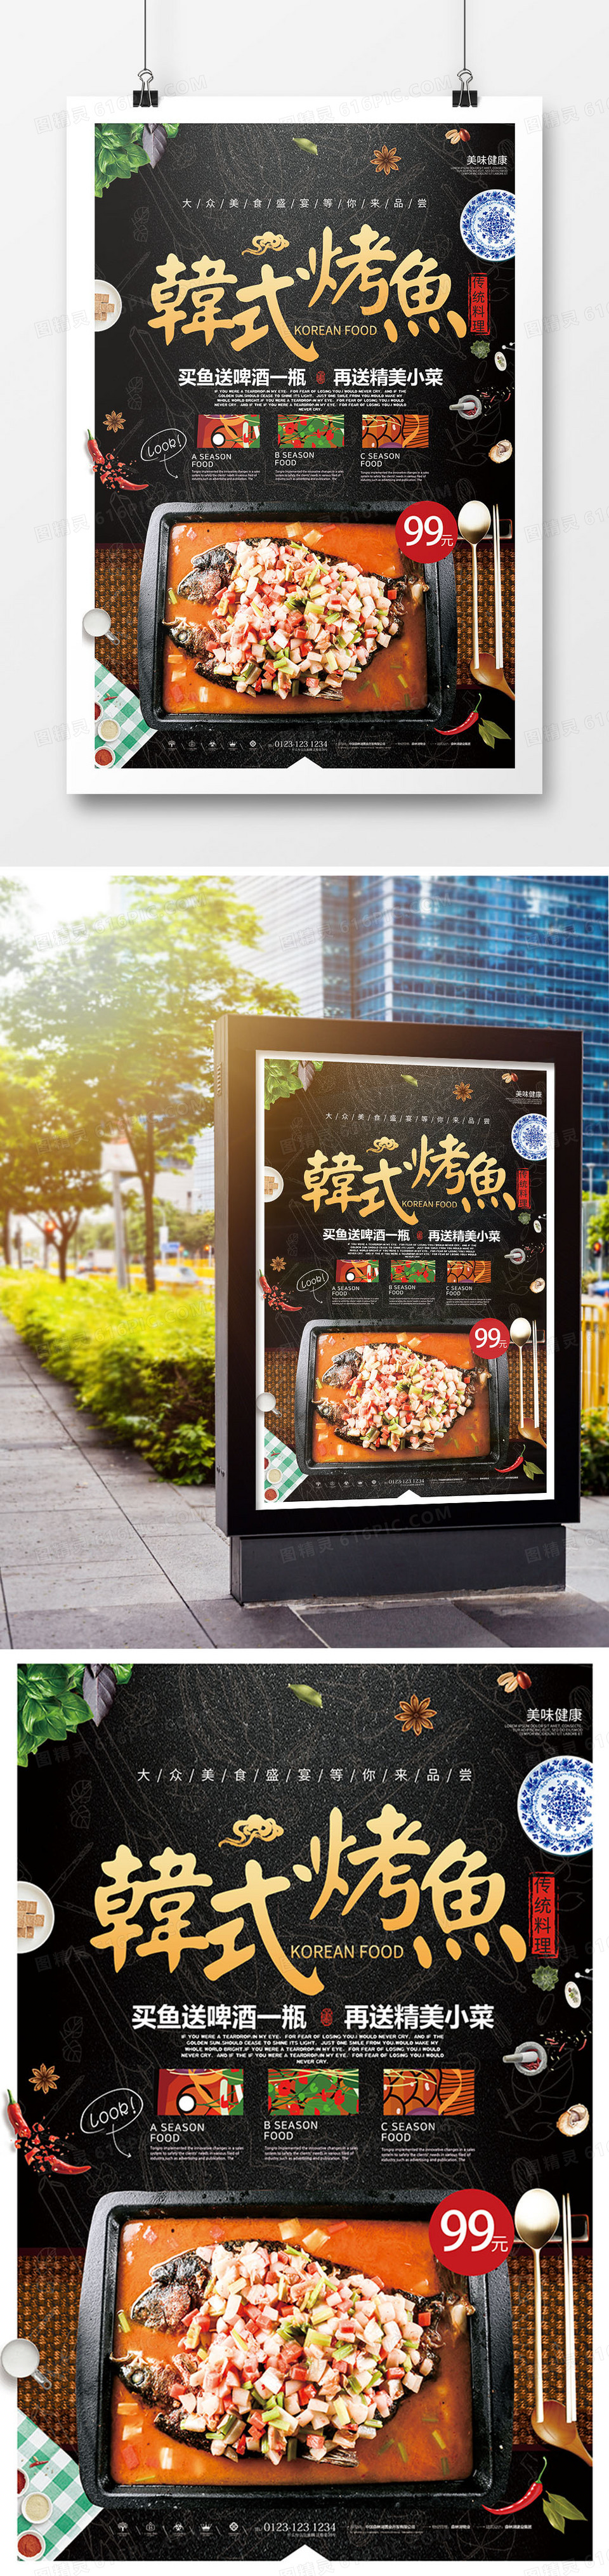 特色美食韩式烤鱼海报设计